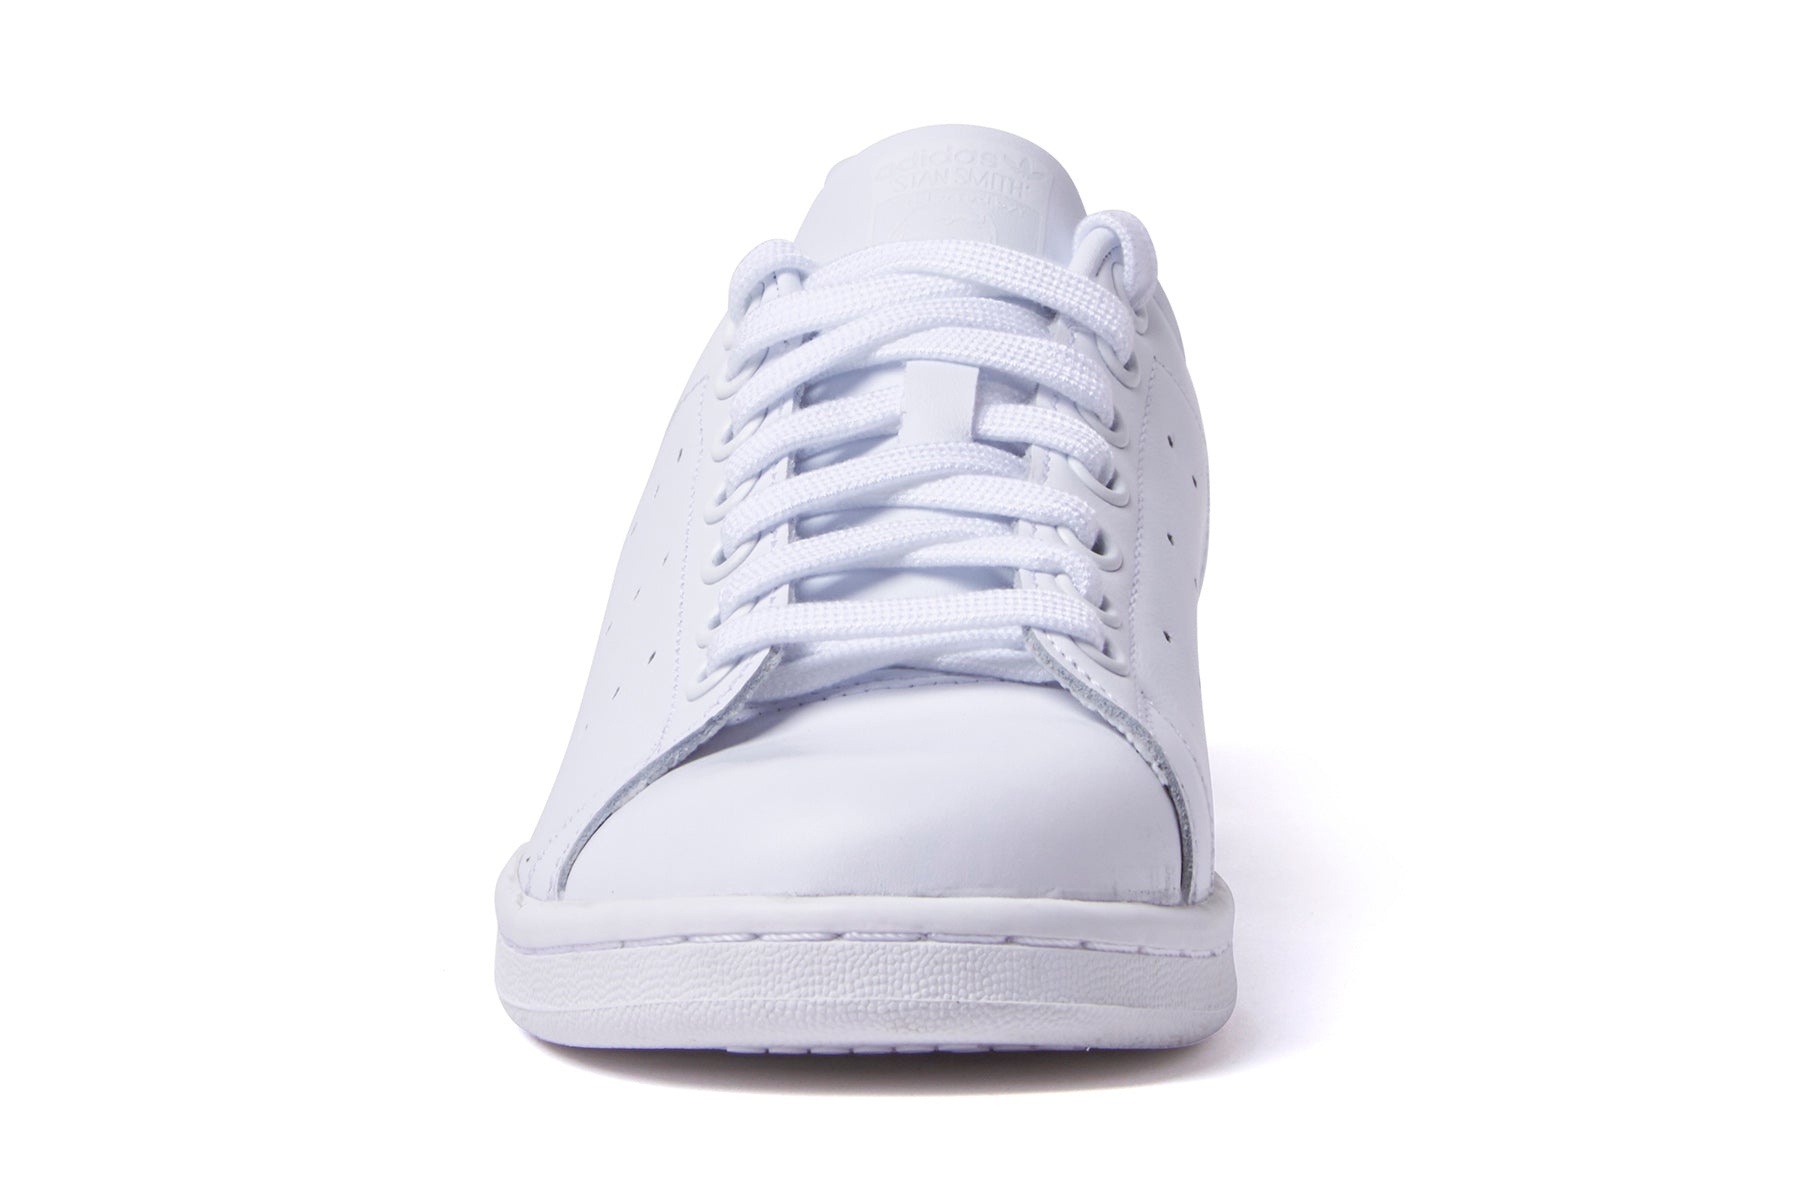 Adidas Stan Smith - White / White / White